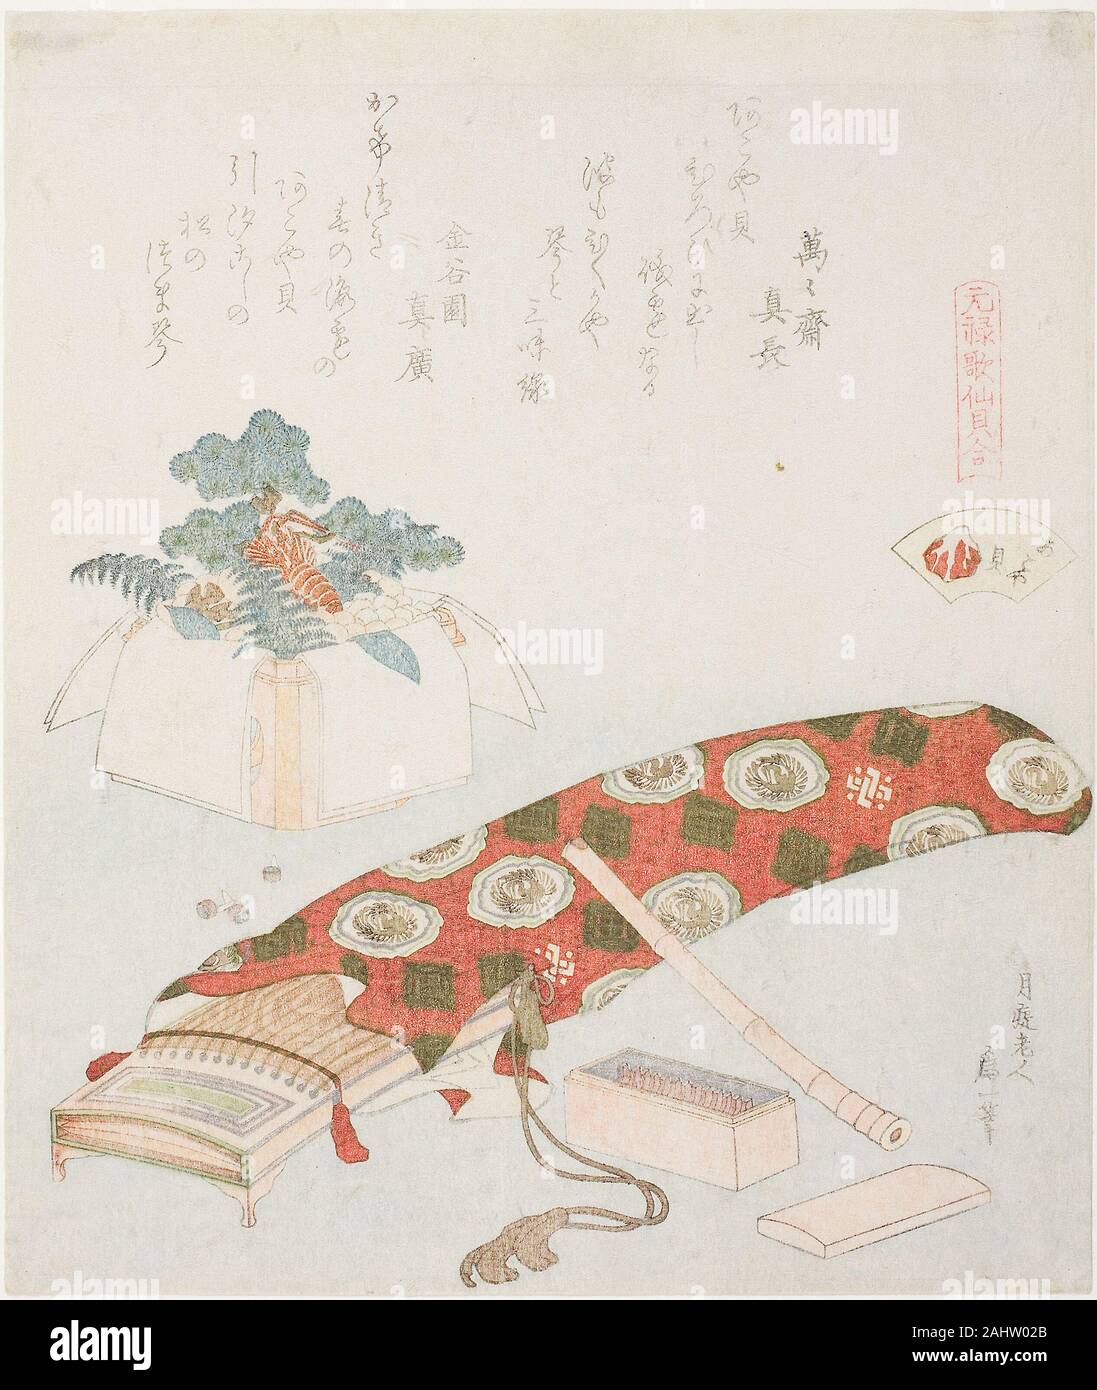 Katsushika Hokusai. Koto und des Neuen Jahres bietet, Illustration für die Akoya Beach Shell (Akoyagai), aus der Serie eine passende Spiel mit genroku - Zeitraum Gedicht Shells (Genroku kasen Kai awase). 1816 - 1833. Japan. Farbe holzschnitt; nishiki'e mit metallischen Pigmenten und blindprinting; surimono shikishiban Stockfoto